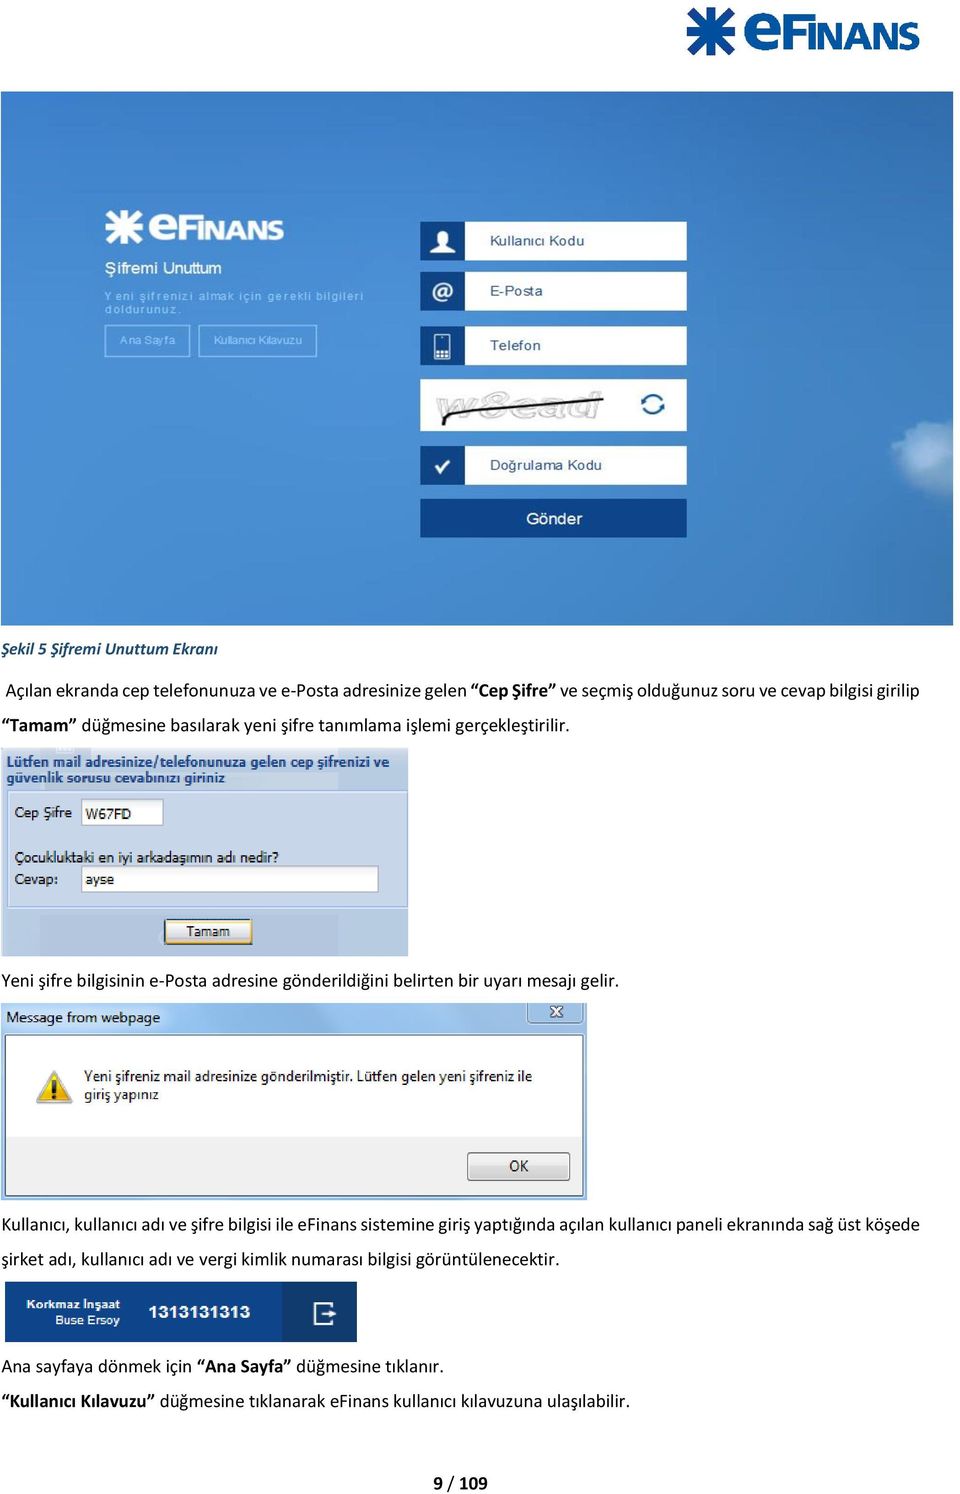 Kullanıcı, kullanıcı adı ve şifre bilgisi ile efinans sistemine giriş yaptığında açılan kullanıcı paneli ekranında sağ üst köşede şirket adı, kullanıcı adı ve vergi